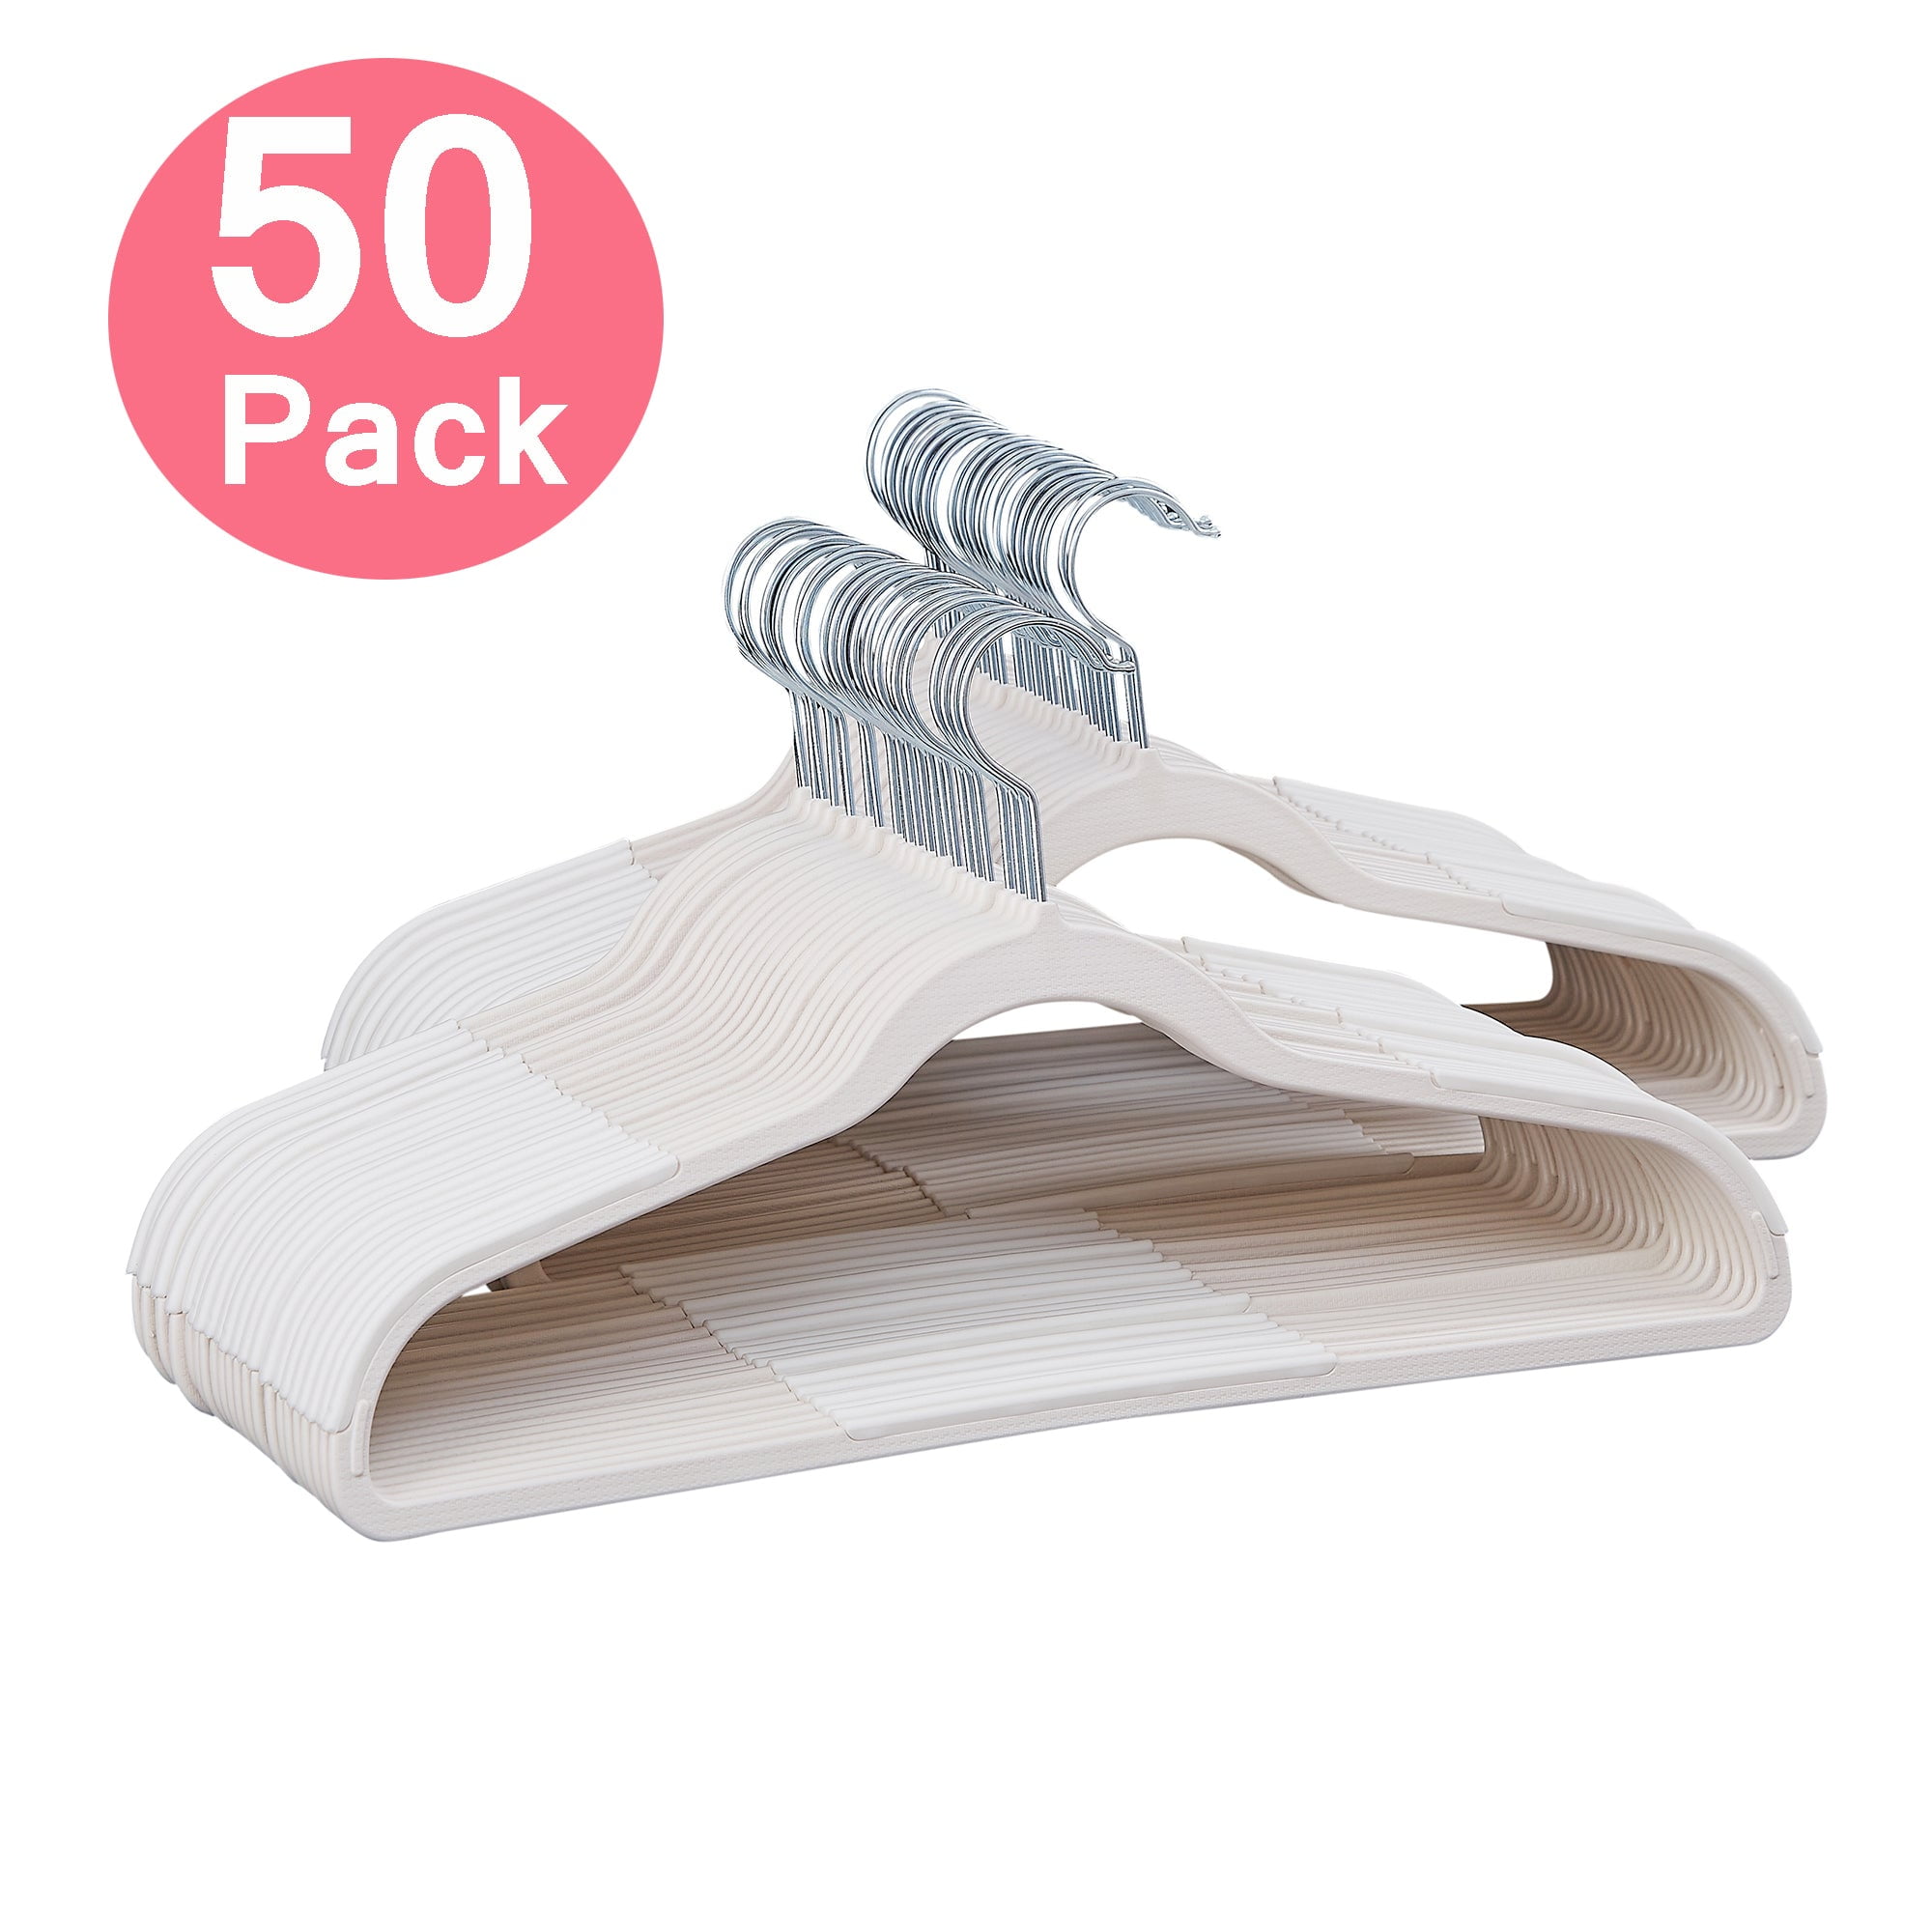 Songmics Pack Of 50 Coat Hangers Heavy-duty Plastic Hangers Light